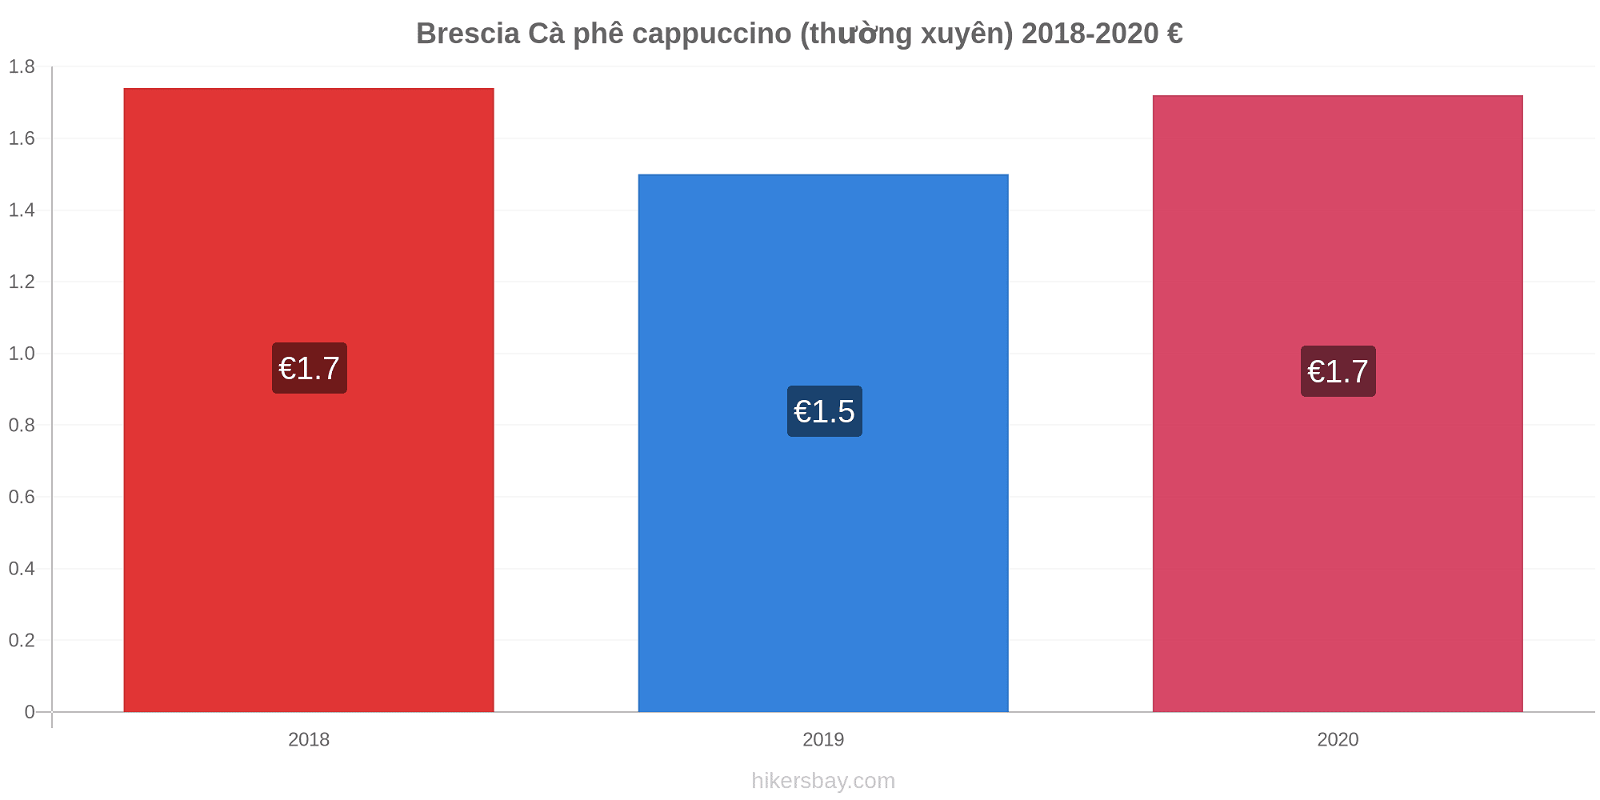 Brescia thay đổi giá Cà phê cappuccino (thường xuyên) hikersbay.com